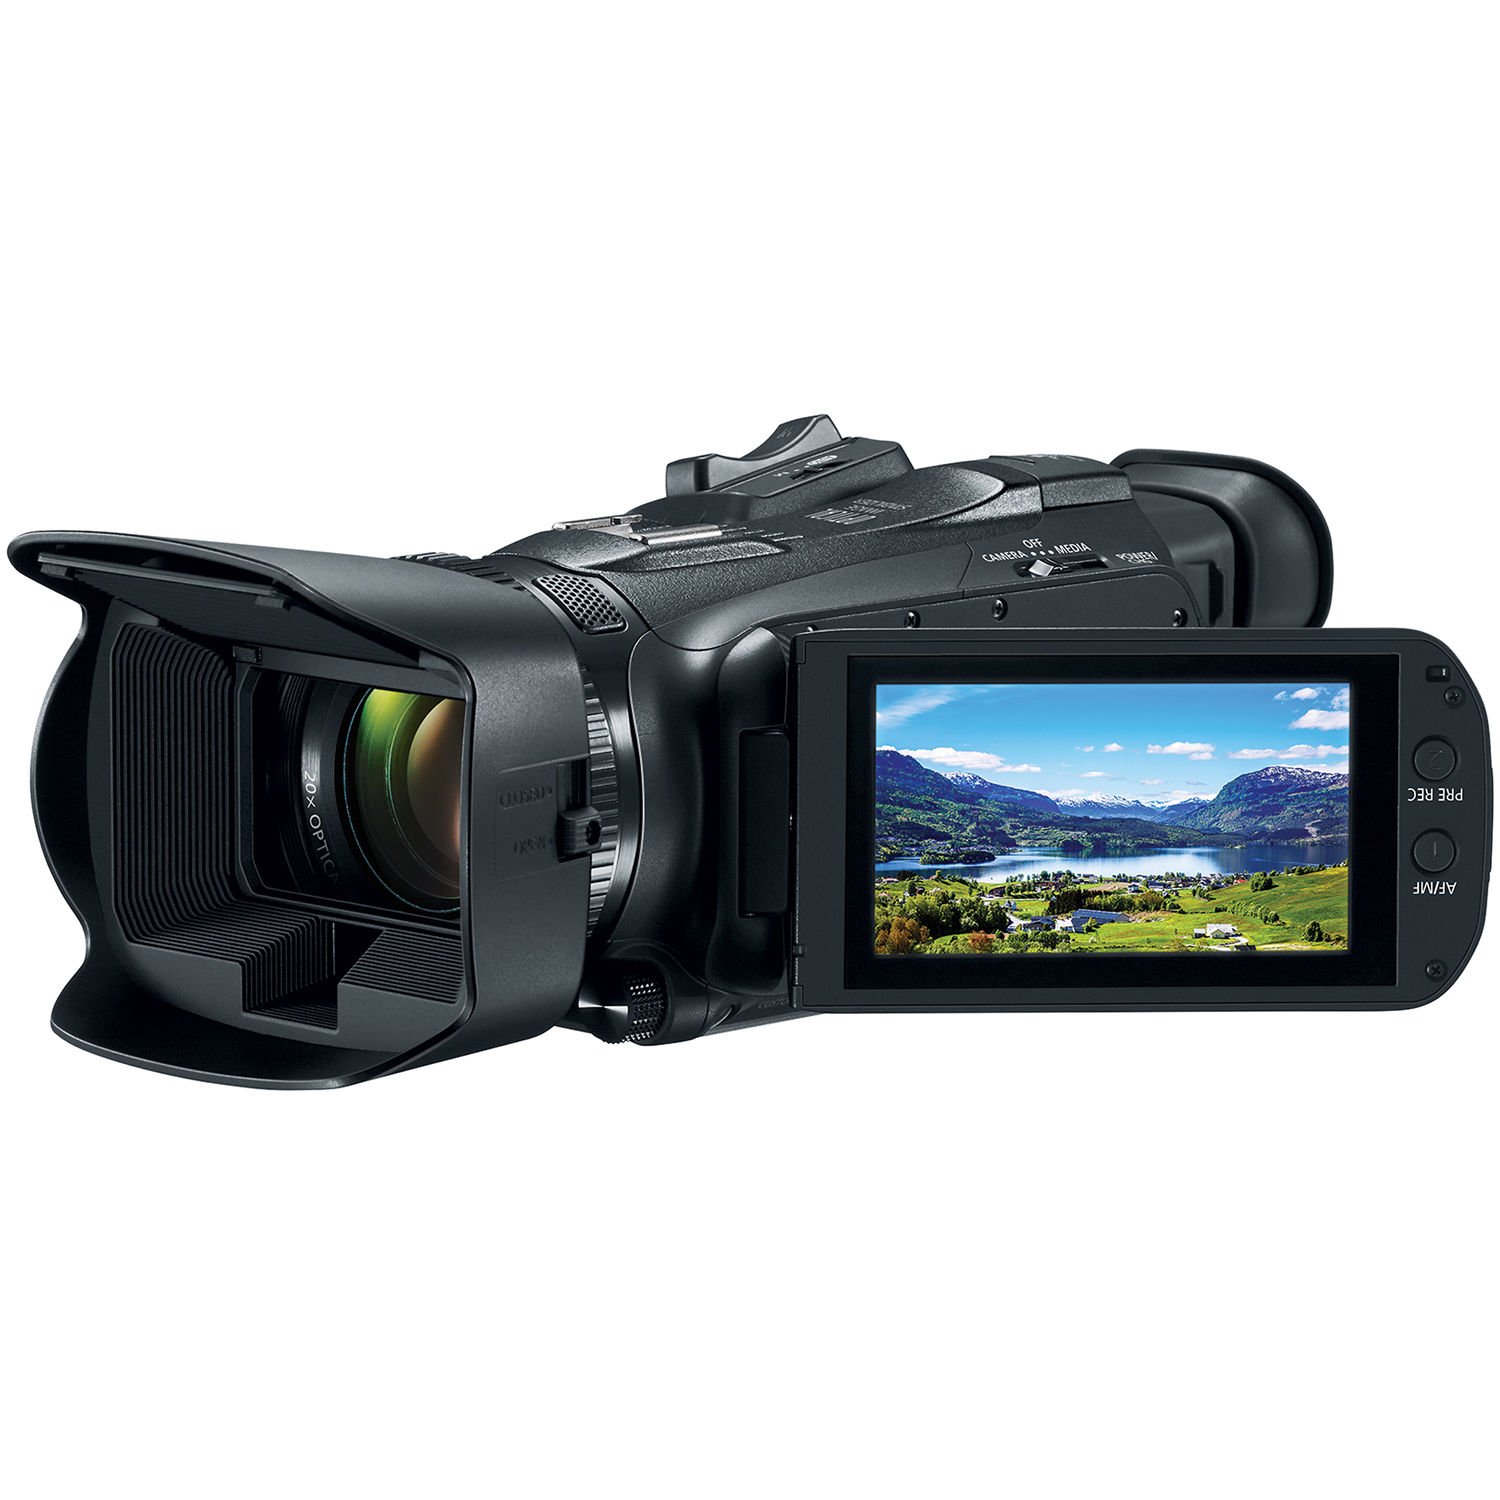  دوربین فیلمبرداری حرفه ای ارزان قیمت